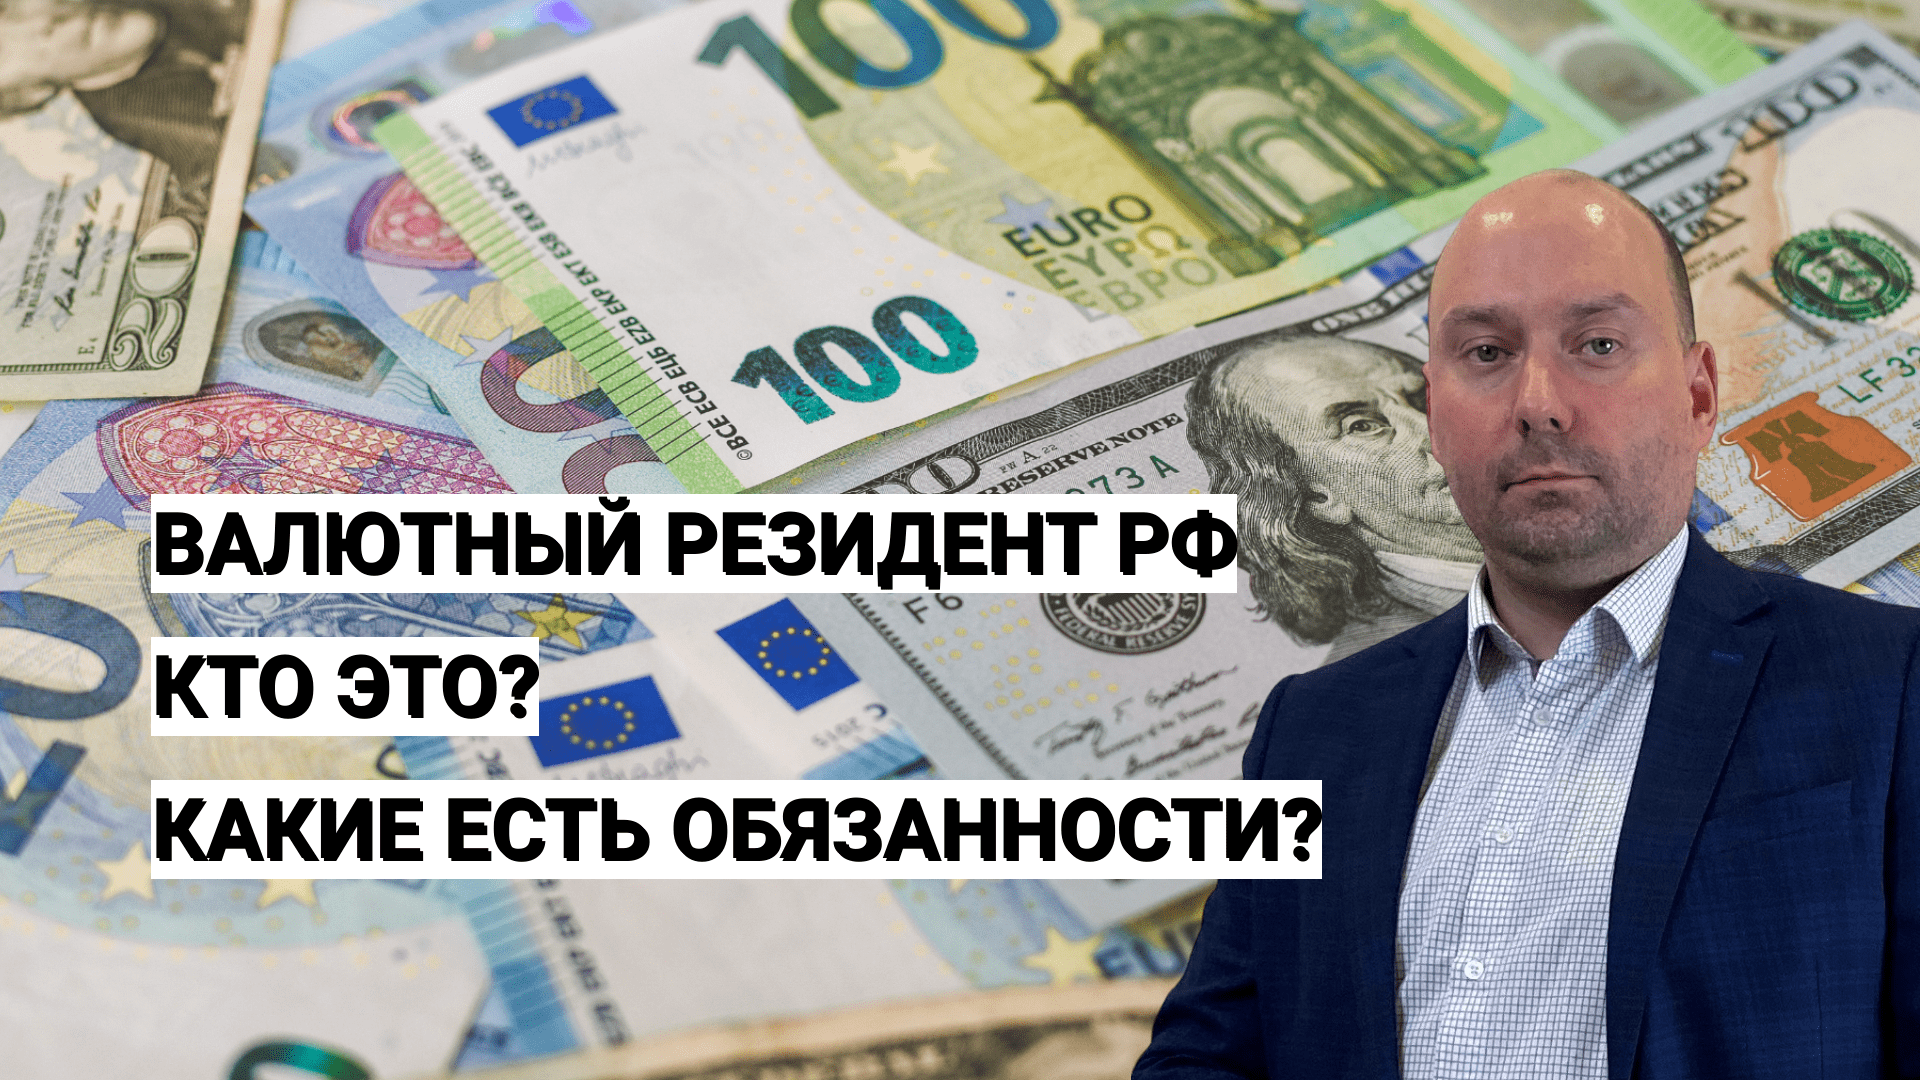 Российский валютный резидент